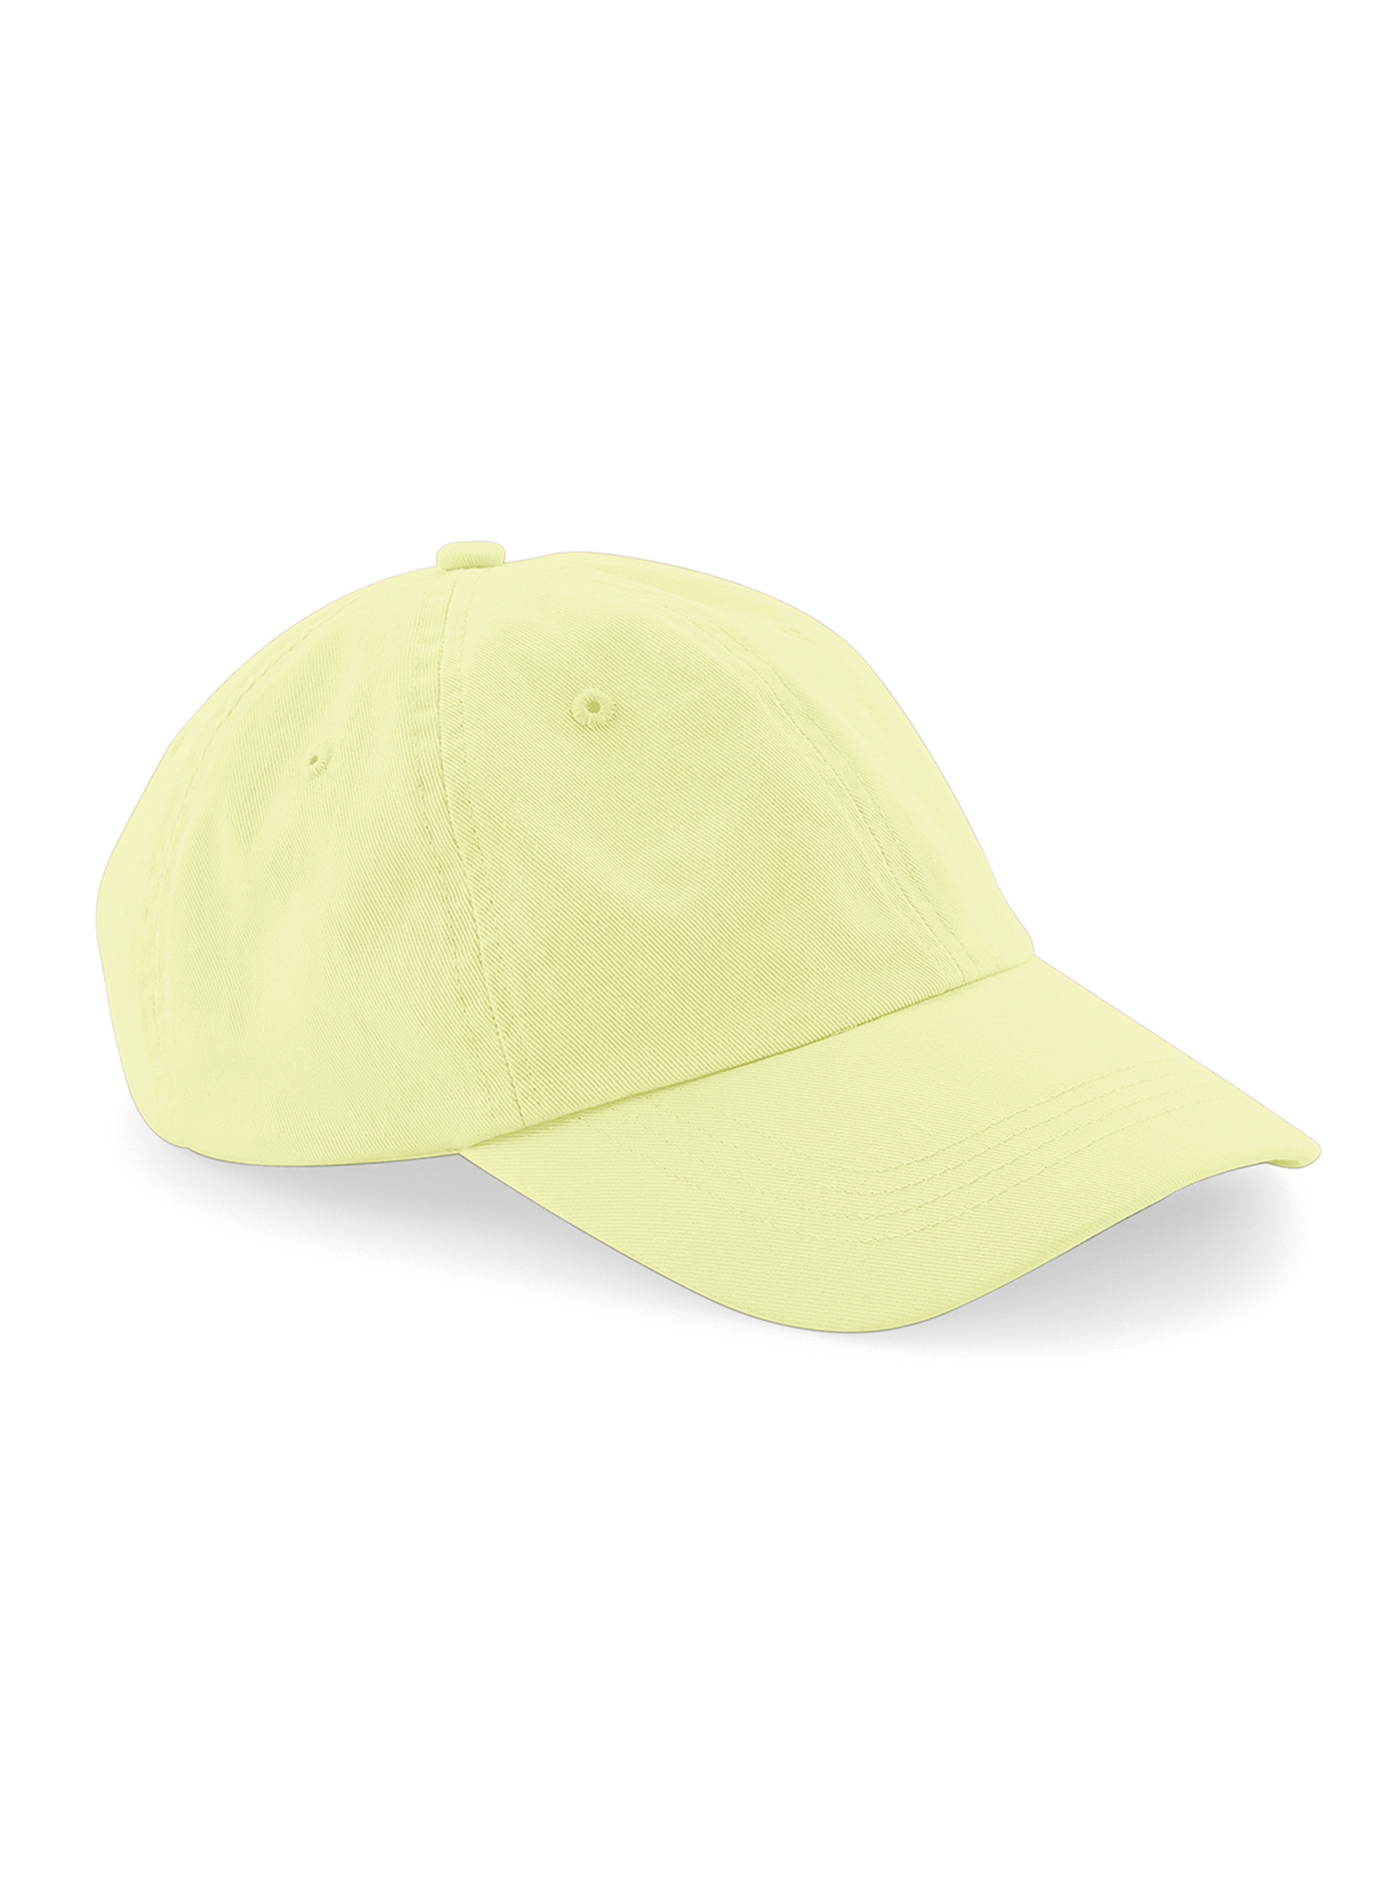 Čepice s nízkým profilem 6 dílná Beechfield - Světle žlutá univerzal